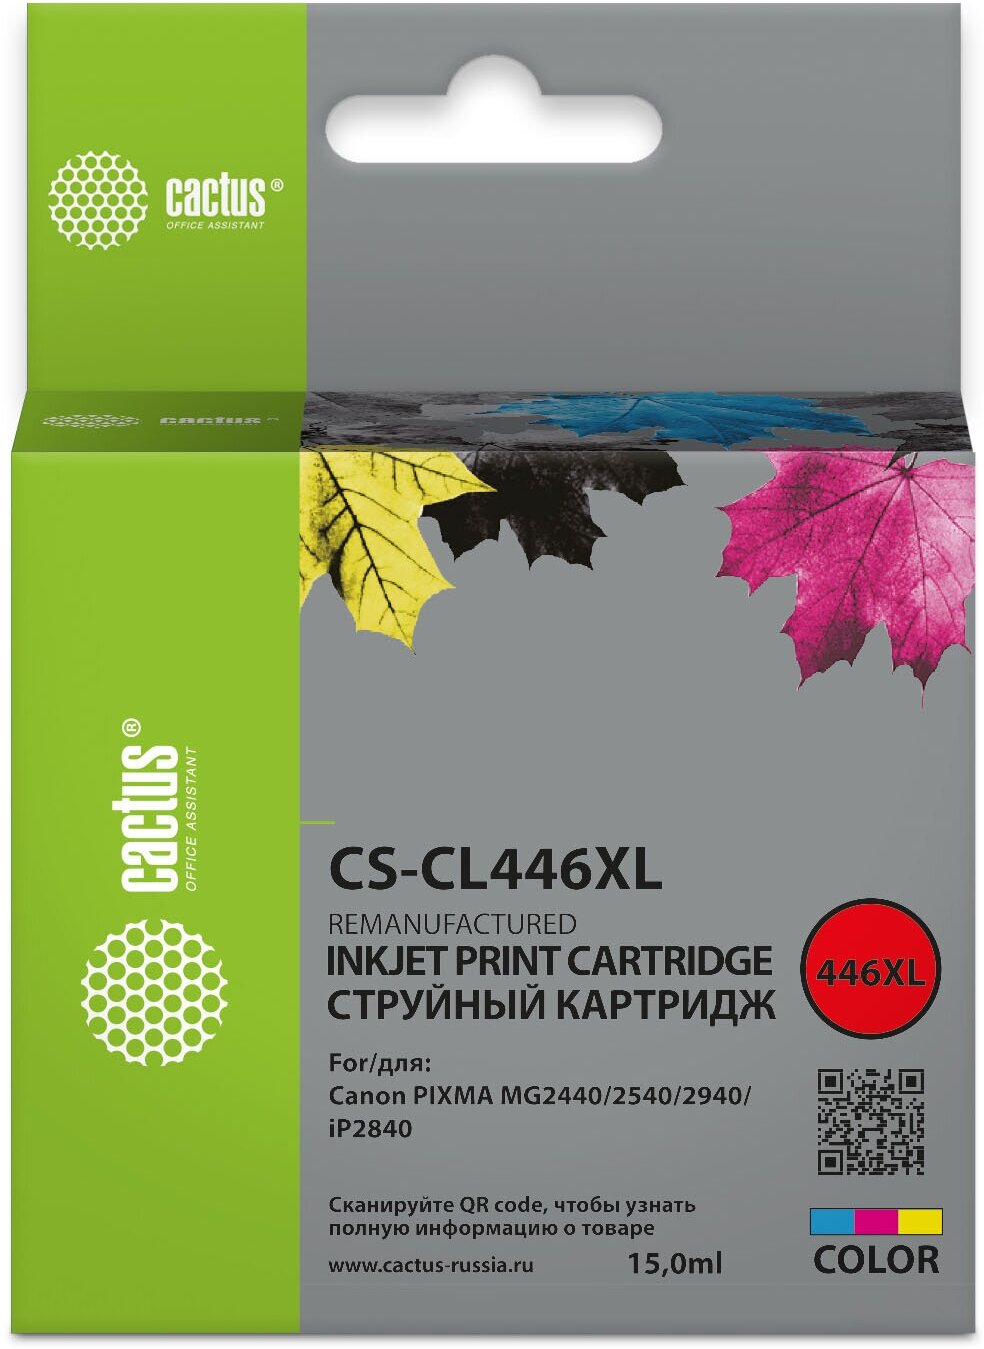 Картридж CL-446 XL Color для струйного принтера Кэнон, Canon PIXMA MG 2440, MG 2540, MG 2940, iP 2840